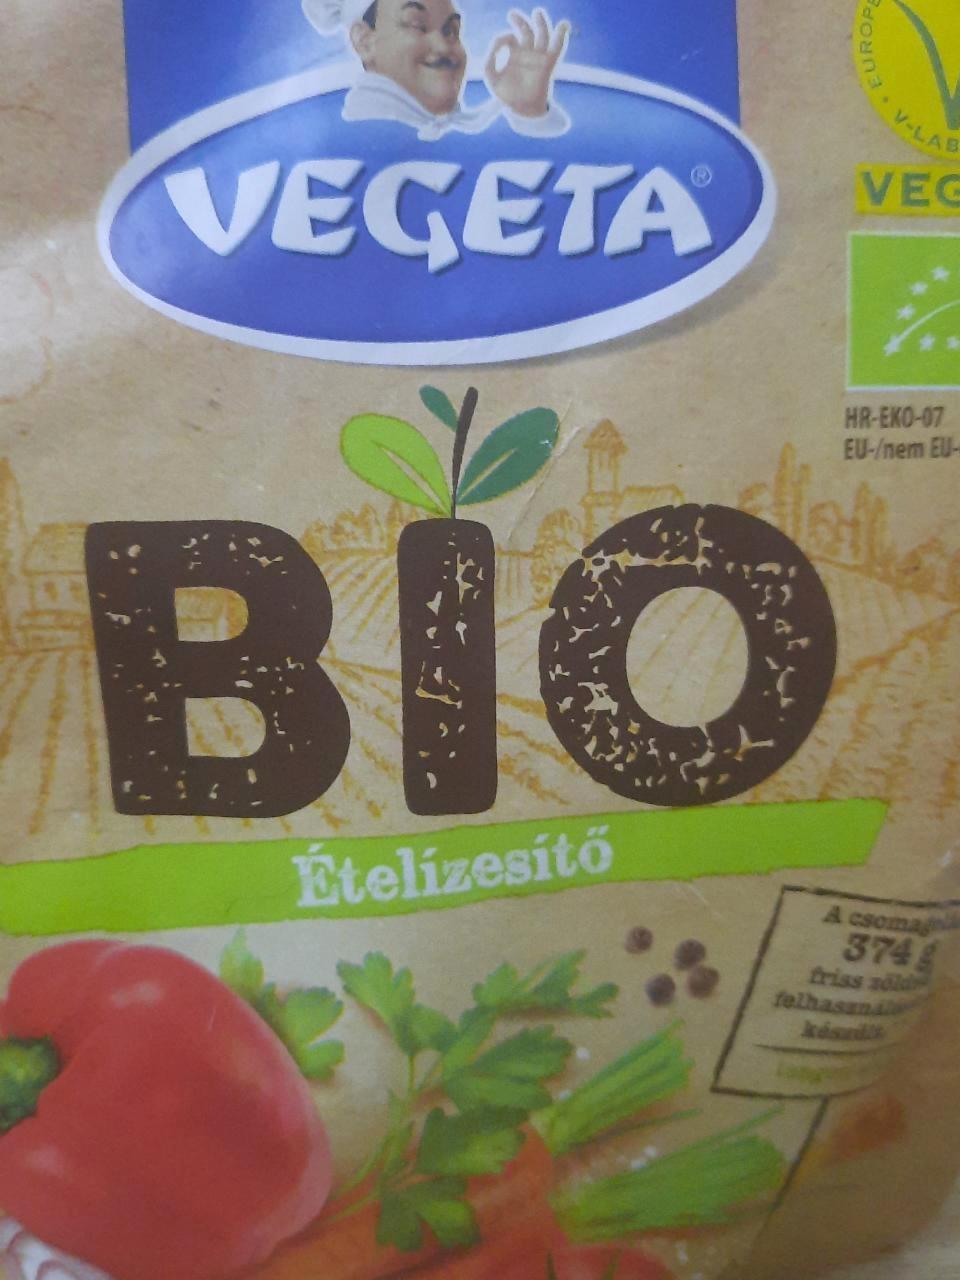 Képek - Vegeta bio ételízesítő 120 g